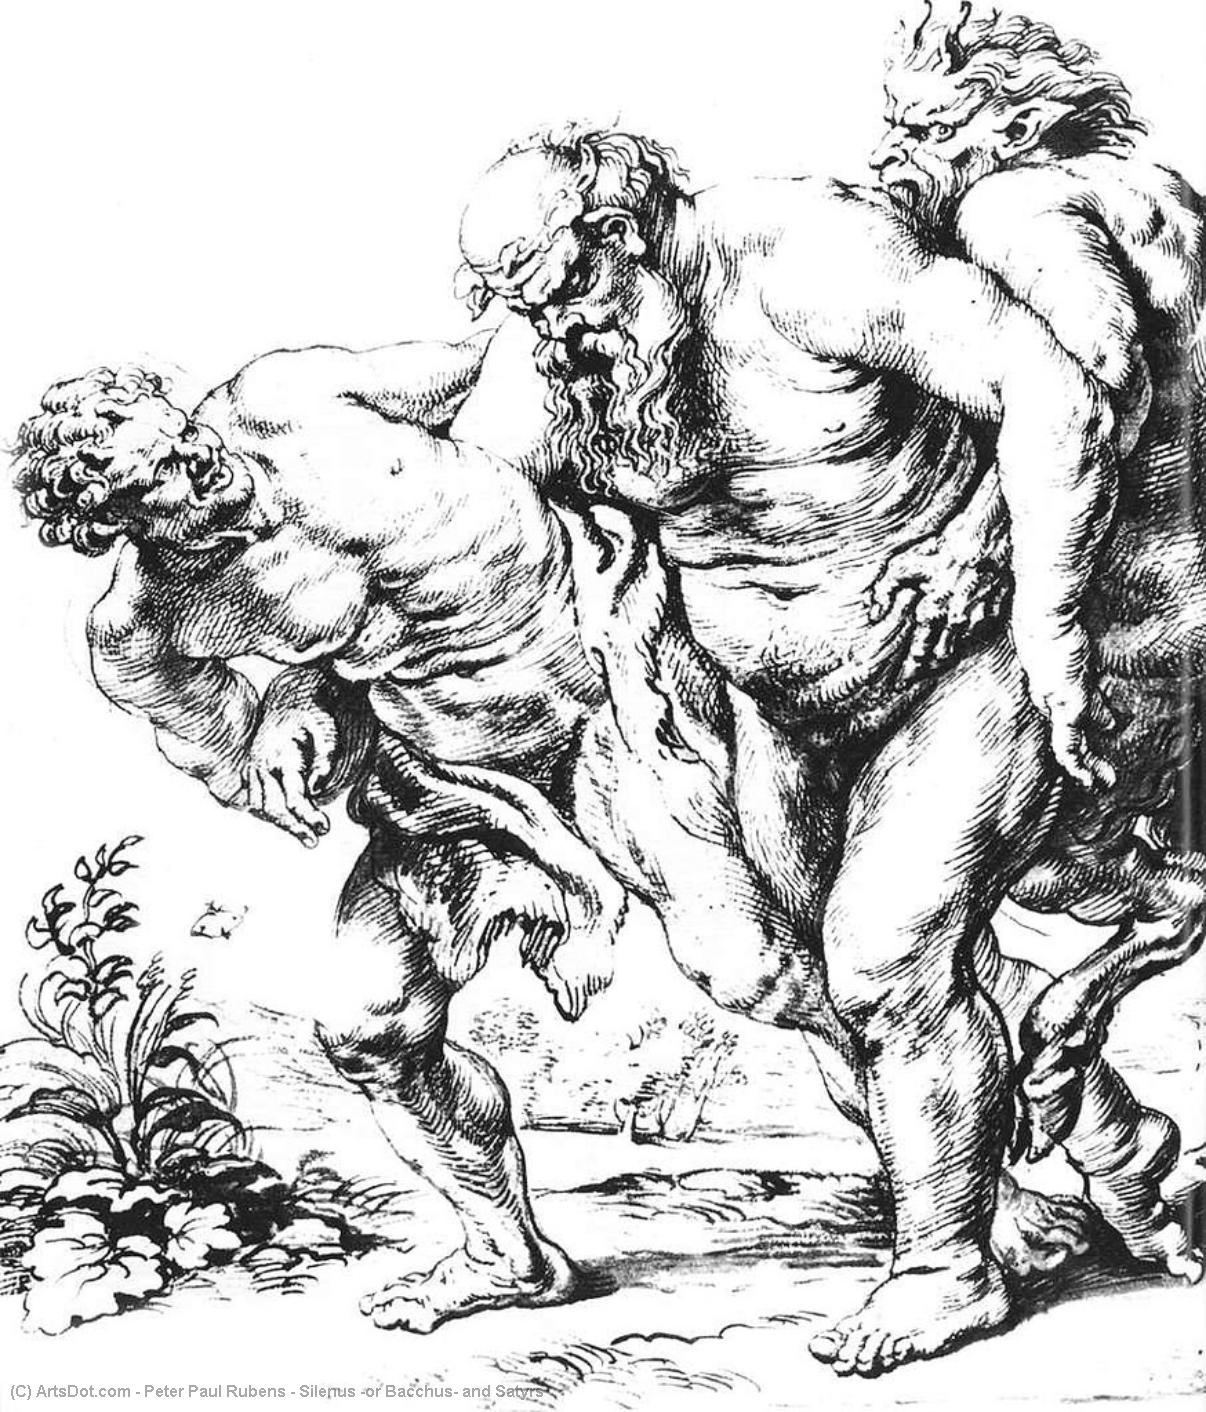 WikiOO.org - Энциклопедия изобразительного искусства - Живопись, Картины  Peter Paul Rubens - силен Ни  Вакх  Причем  Сатиры